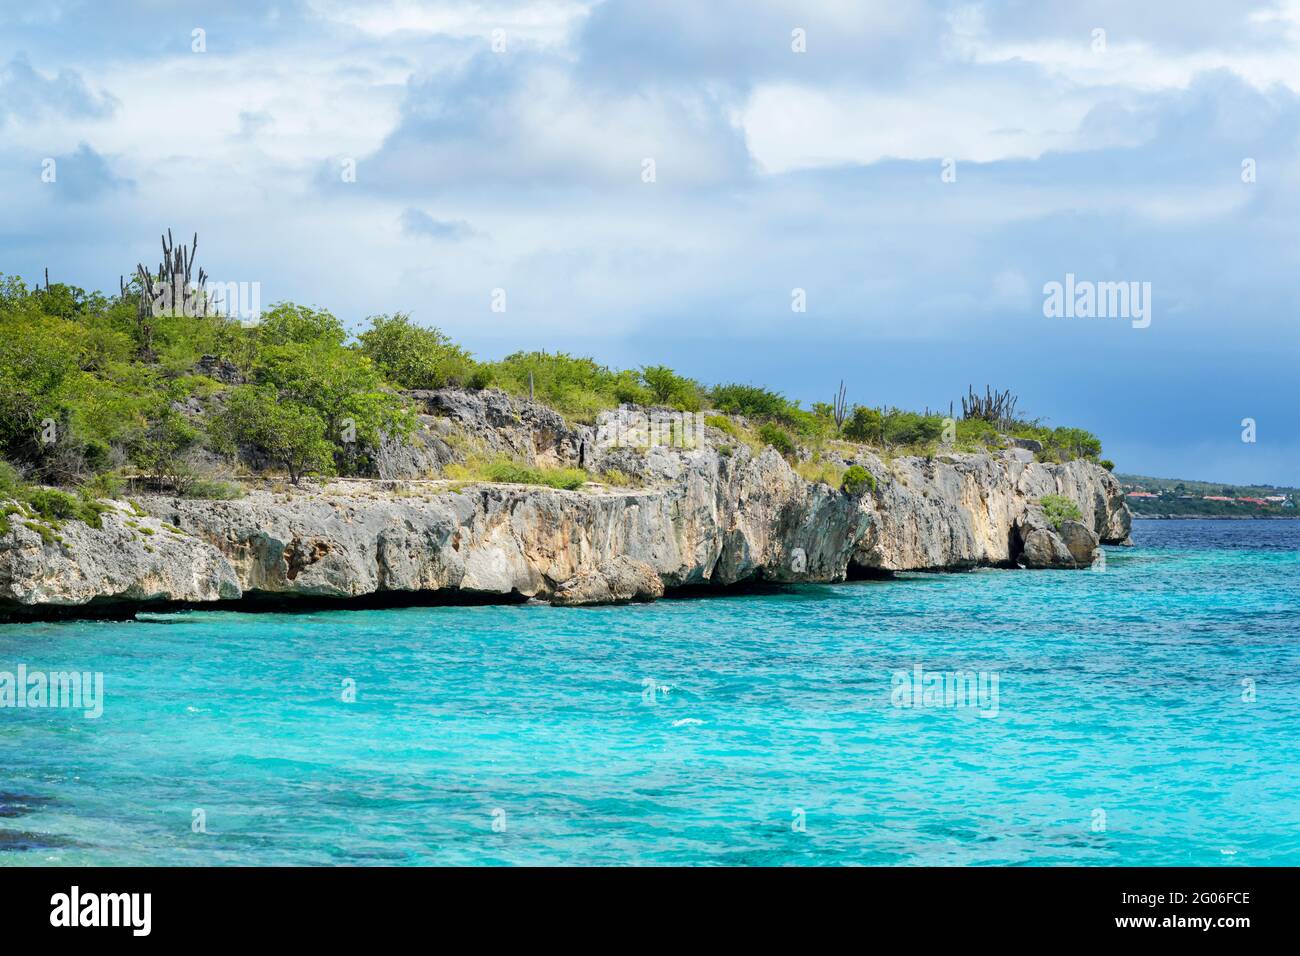 Costa tipica di Bonaire, Caraibi olandesi. Foto Stock